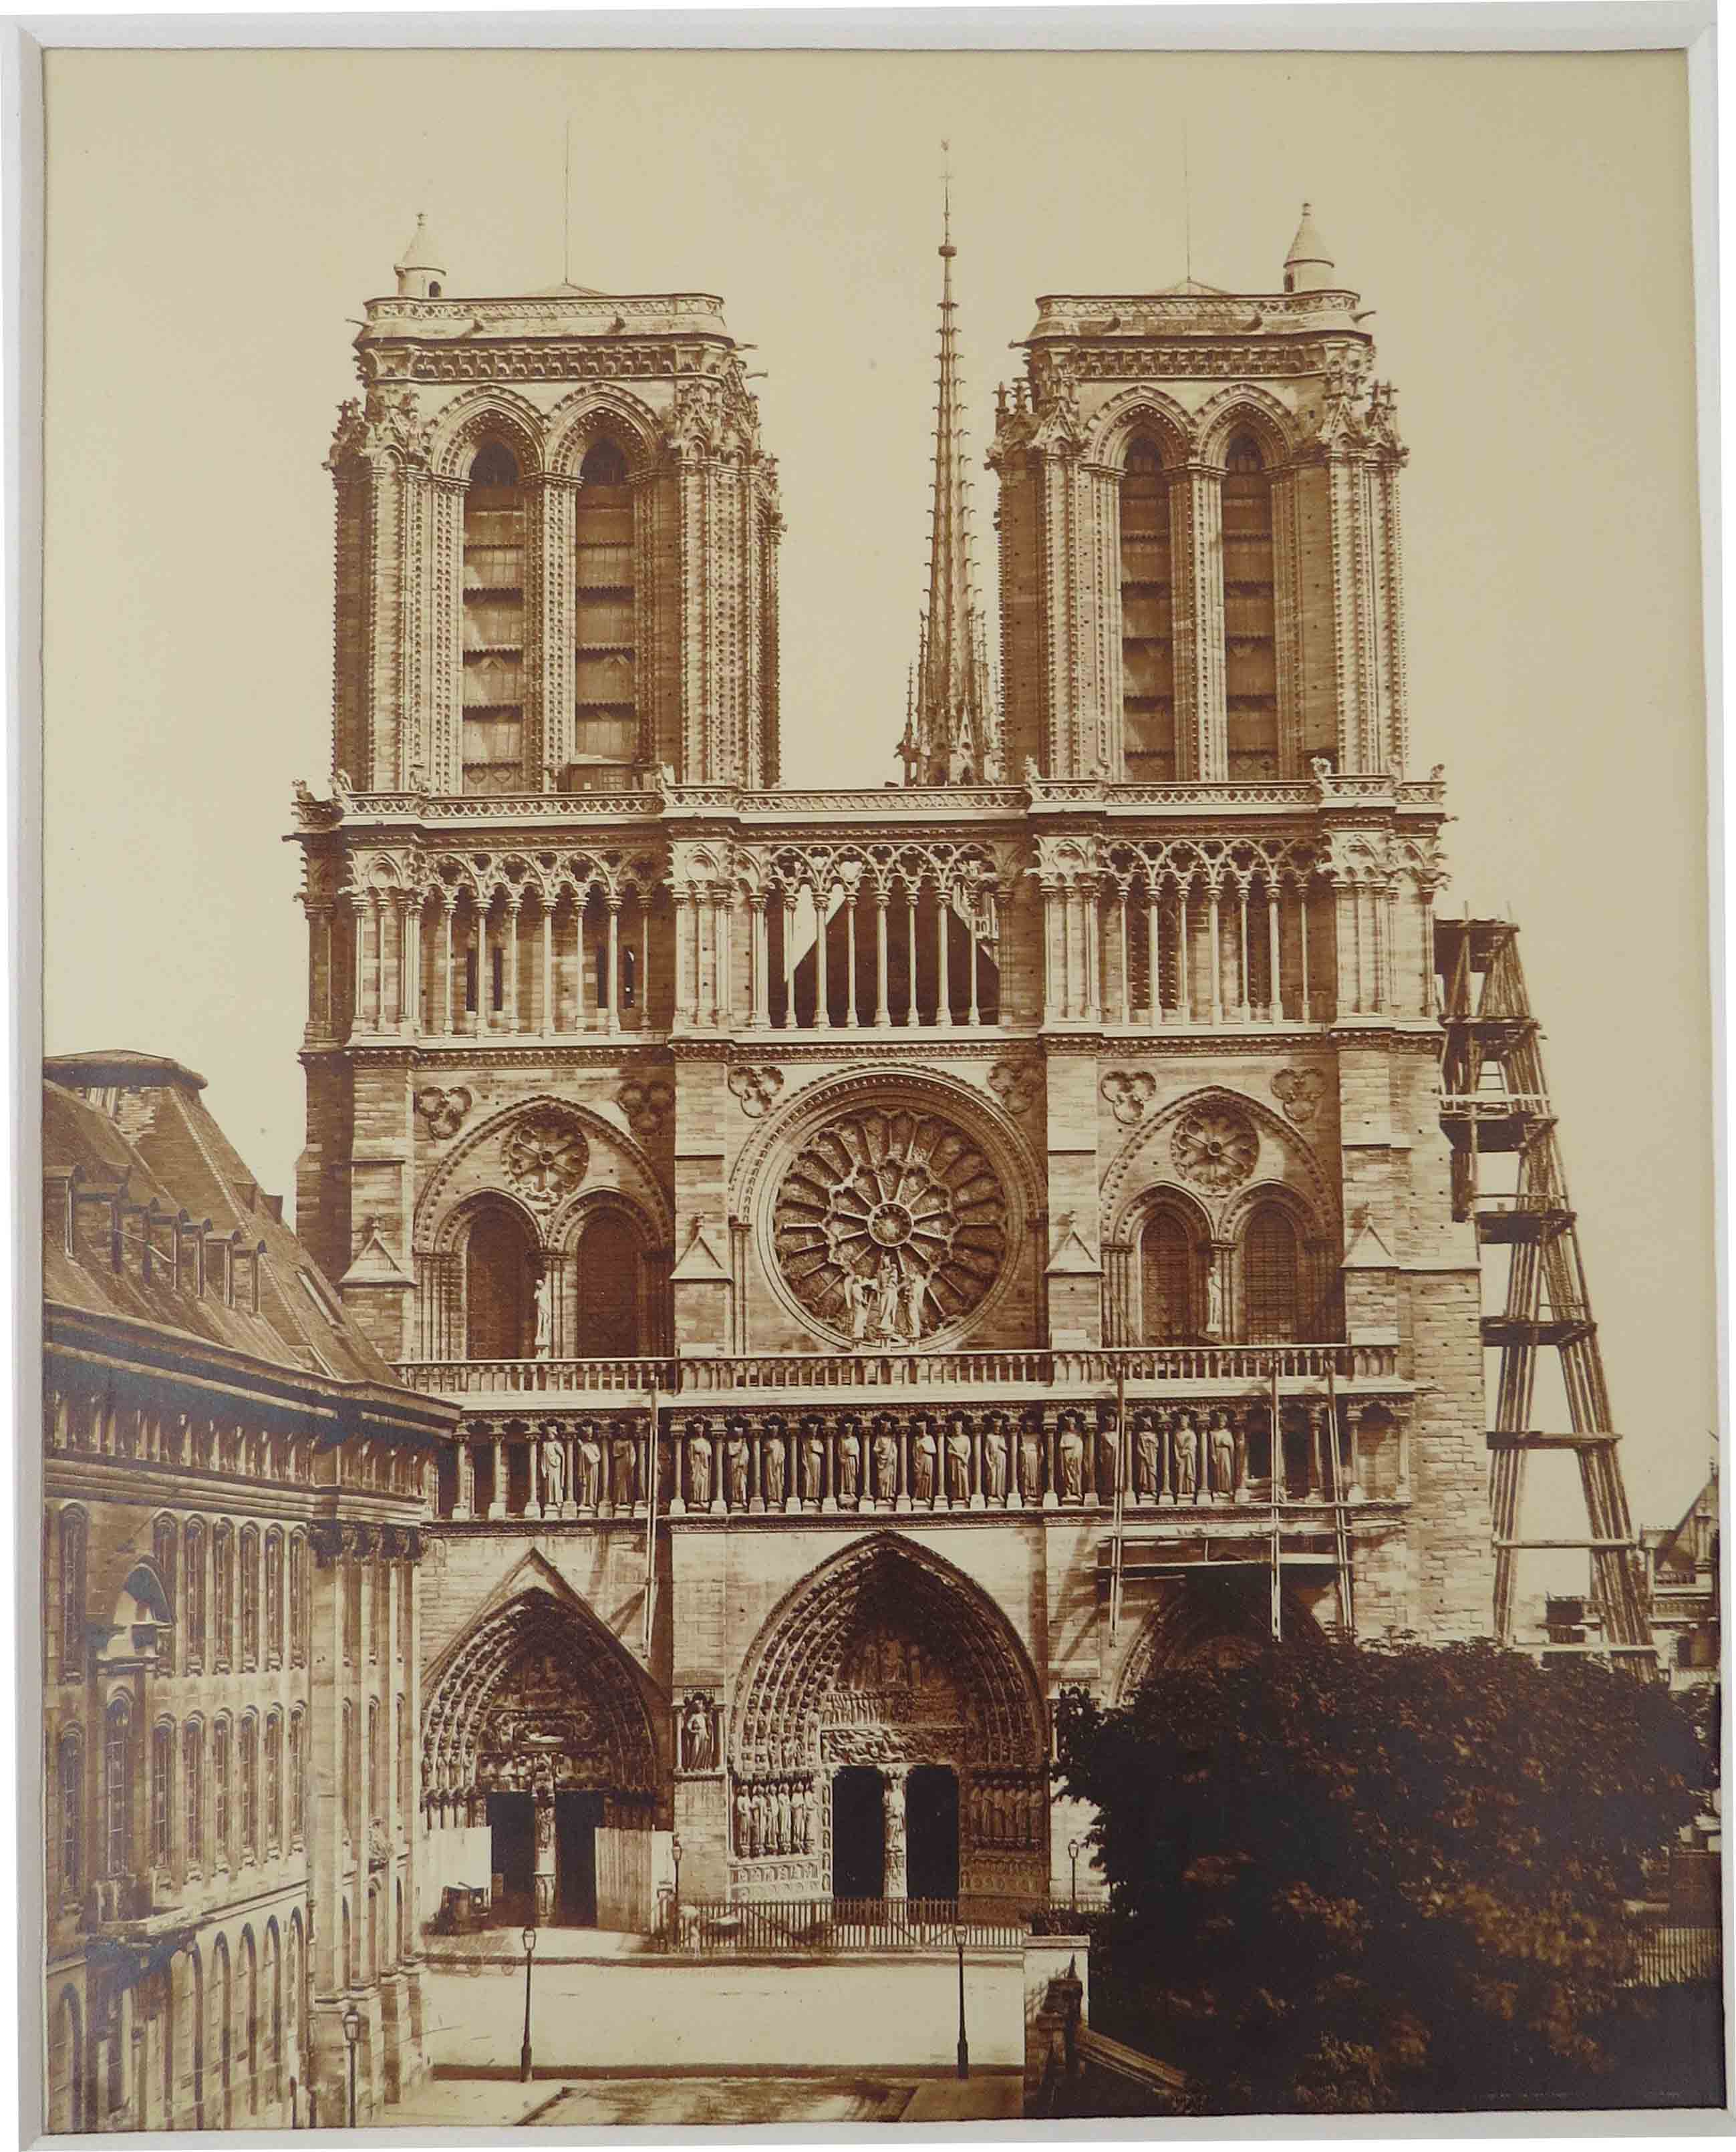 Paris, Notre-Dame - Baldus 1862-Gallery of fine art photography ...